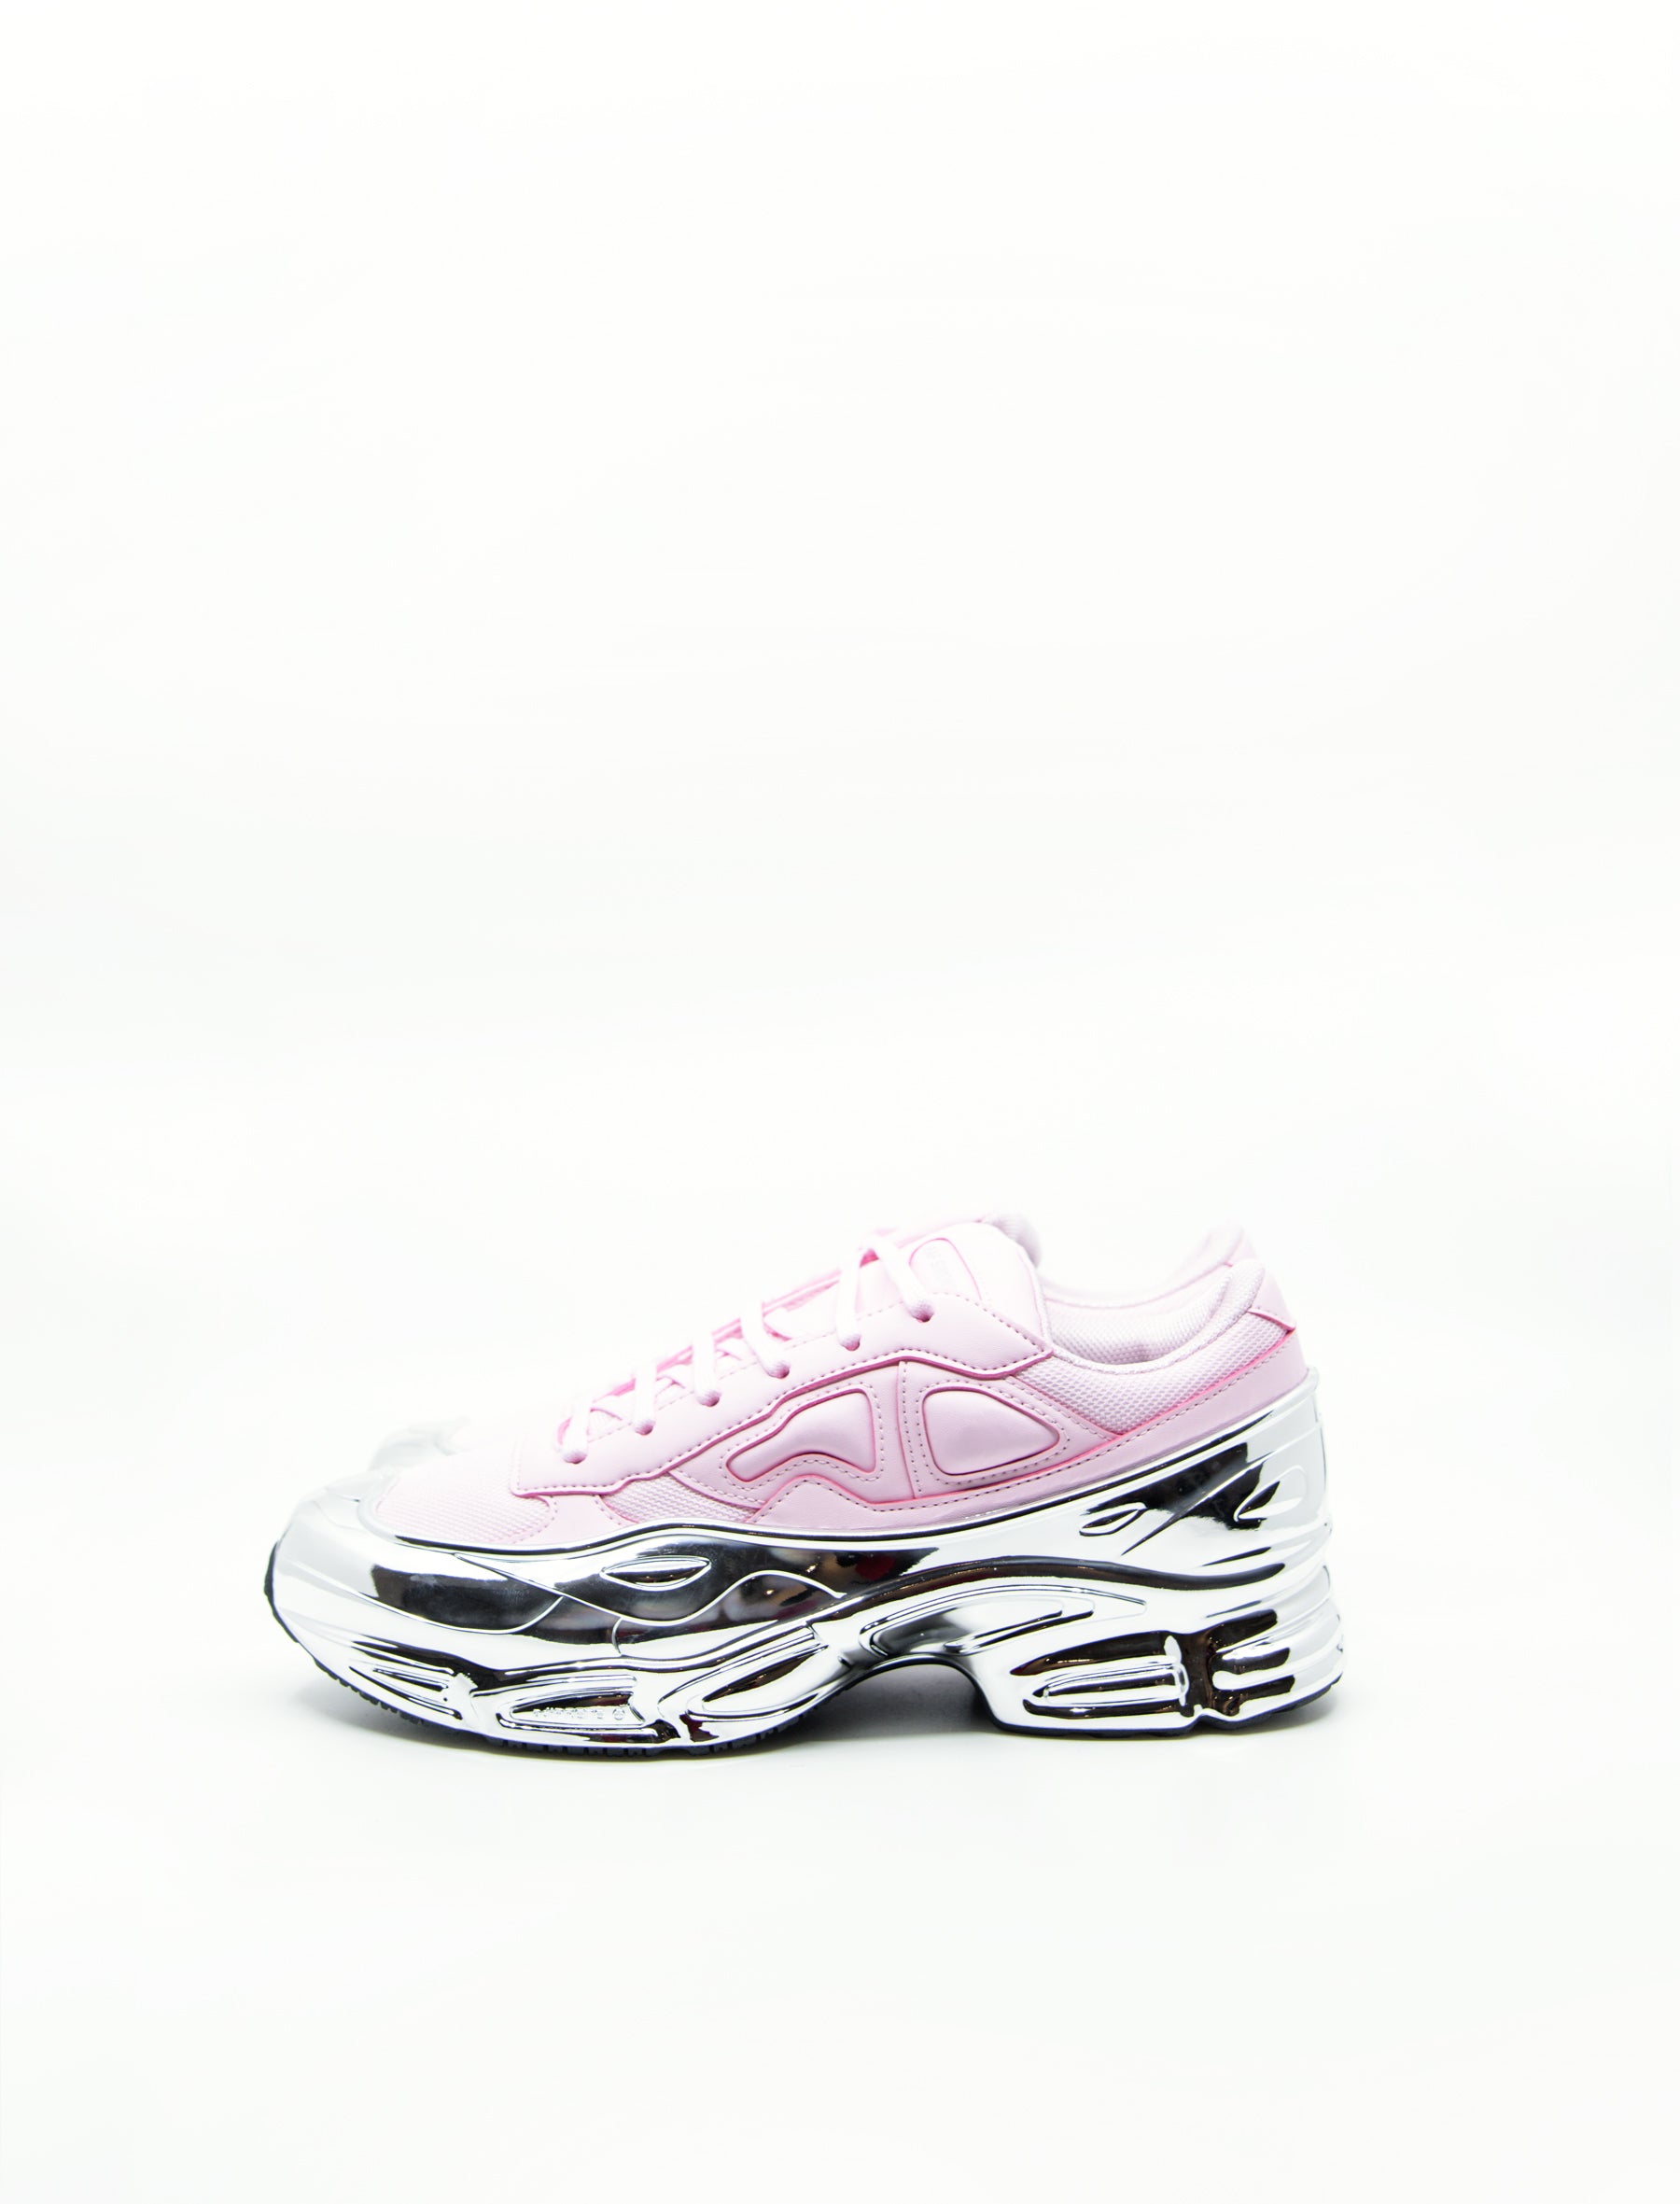 pink and silver raf simons adidas